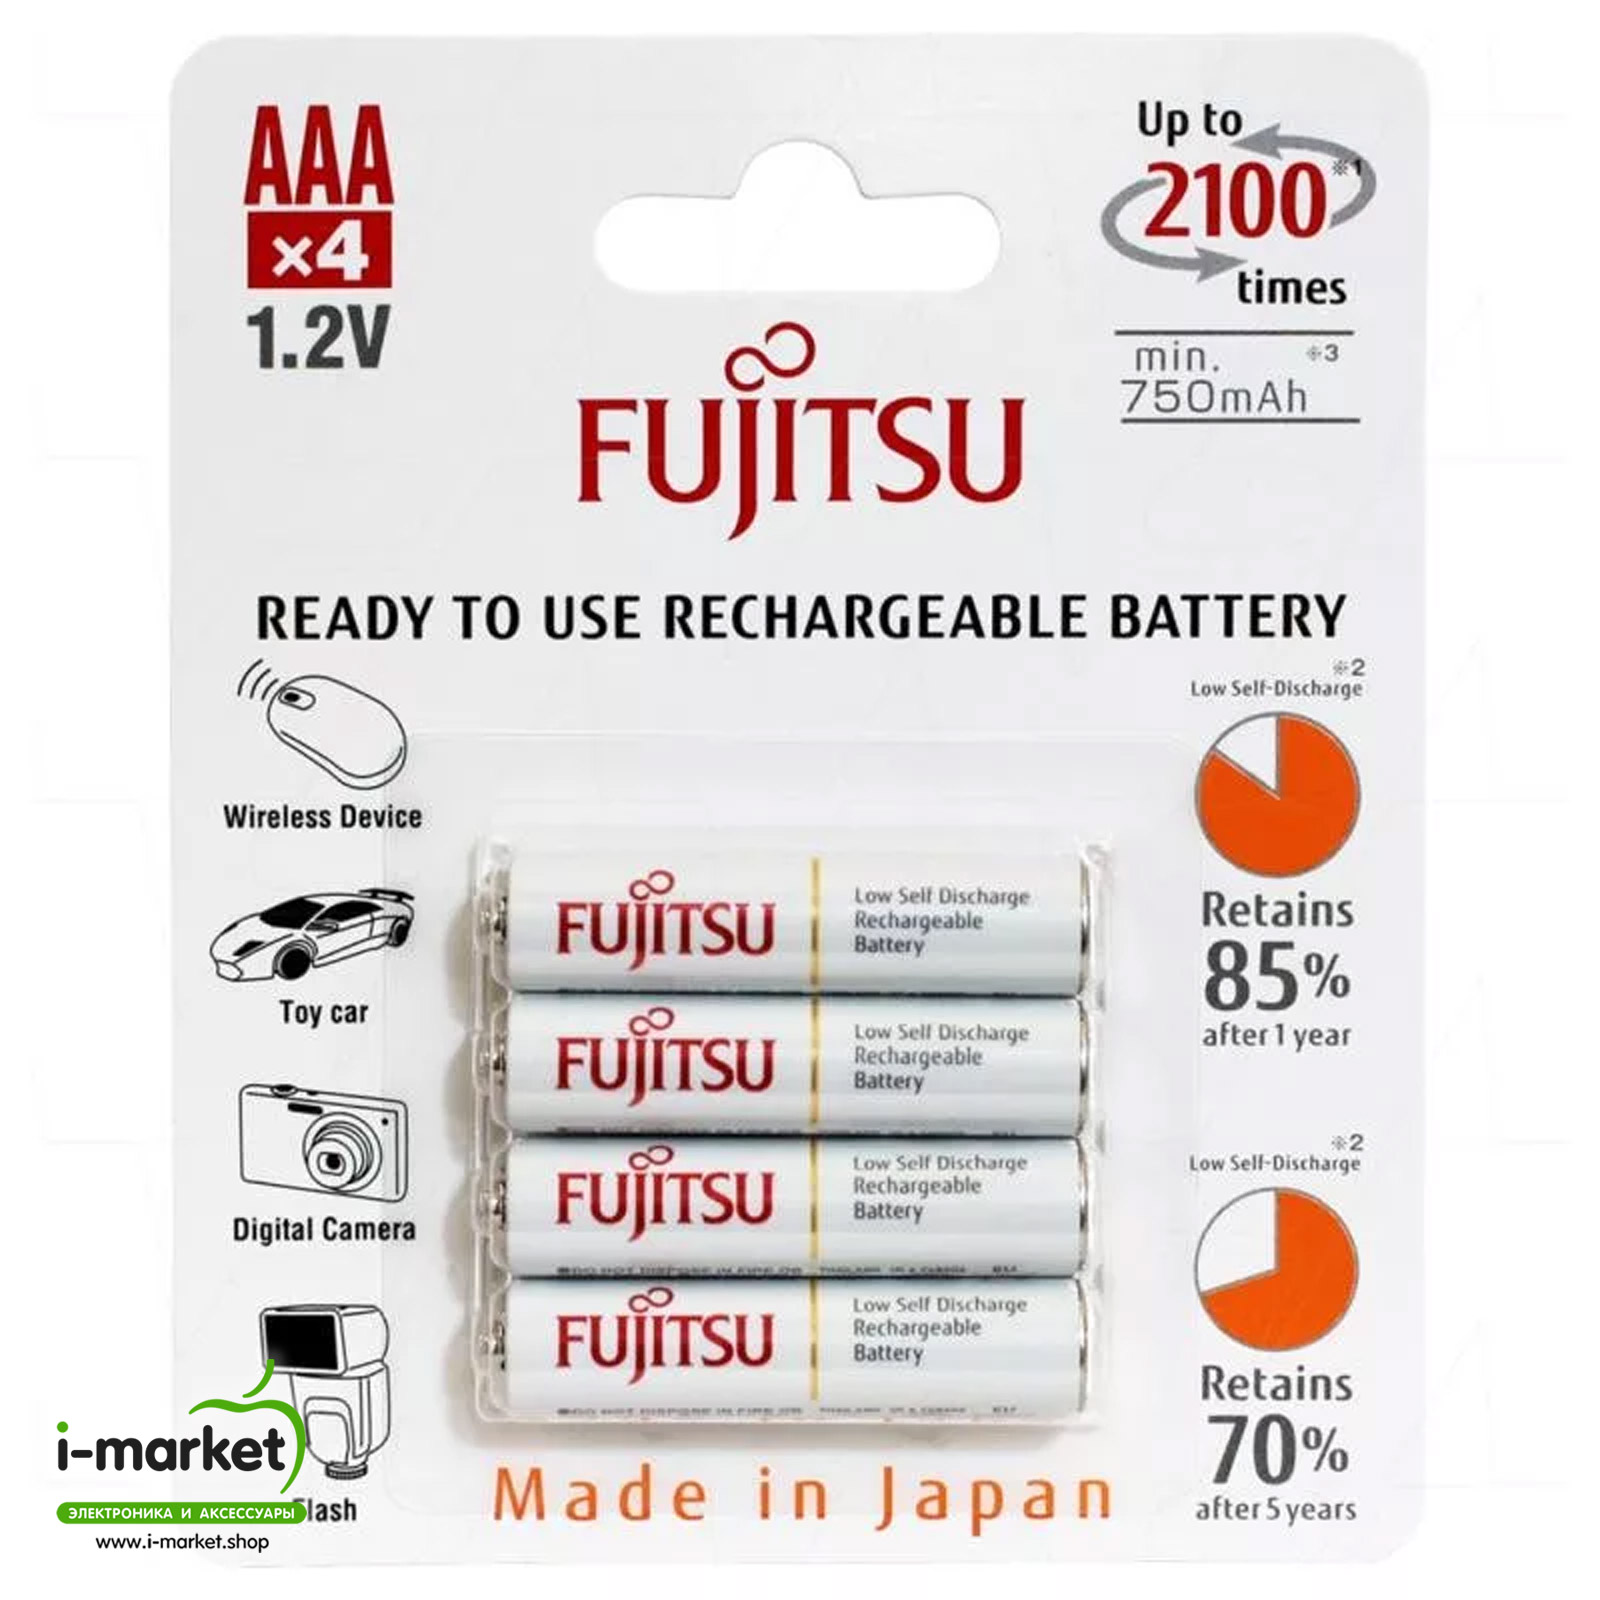 Аккумулятор профессиональный Fujitsu перезаряжаемый R03 AAA NI-MH 800 mAh, в блистере 4 штуки, тип мизинчиковый.